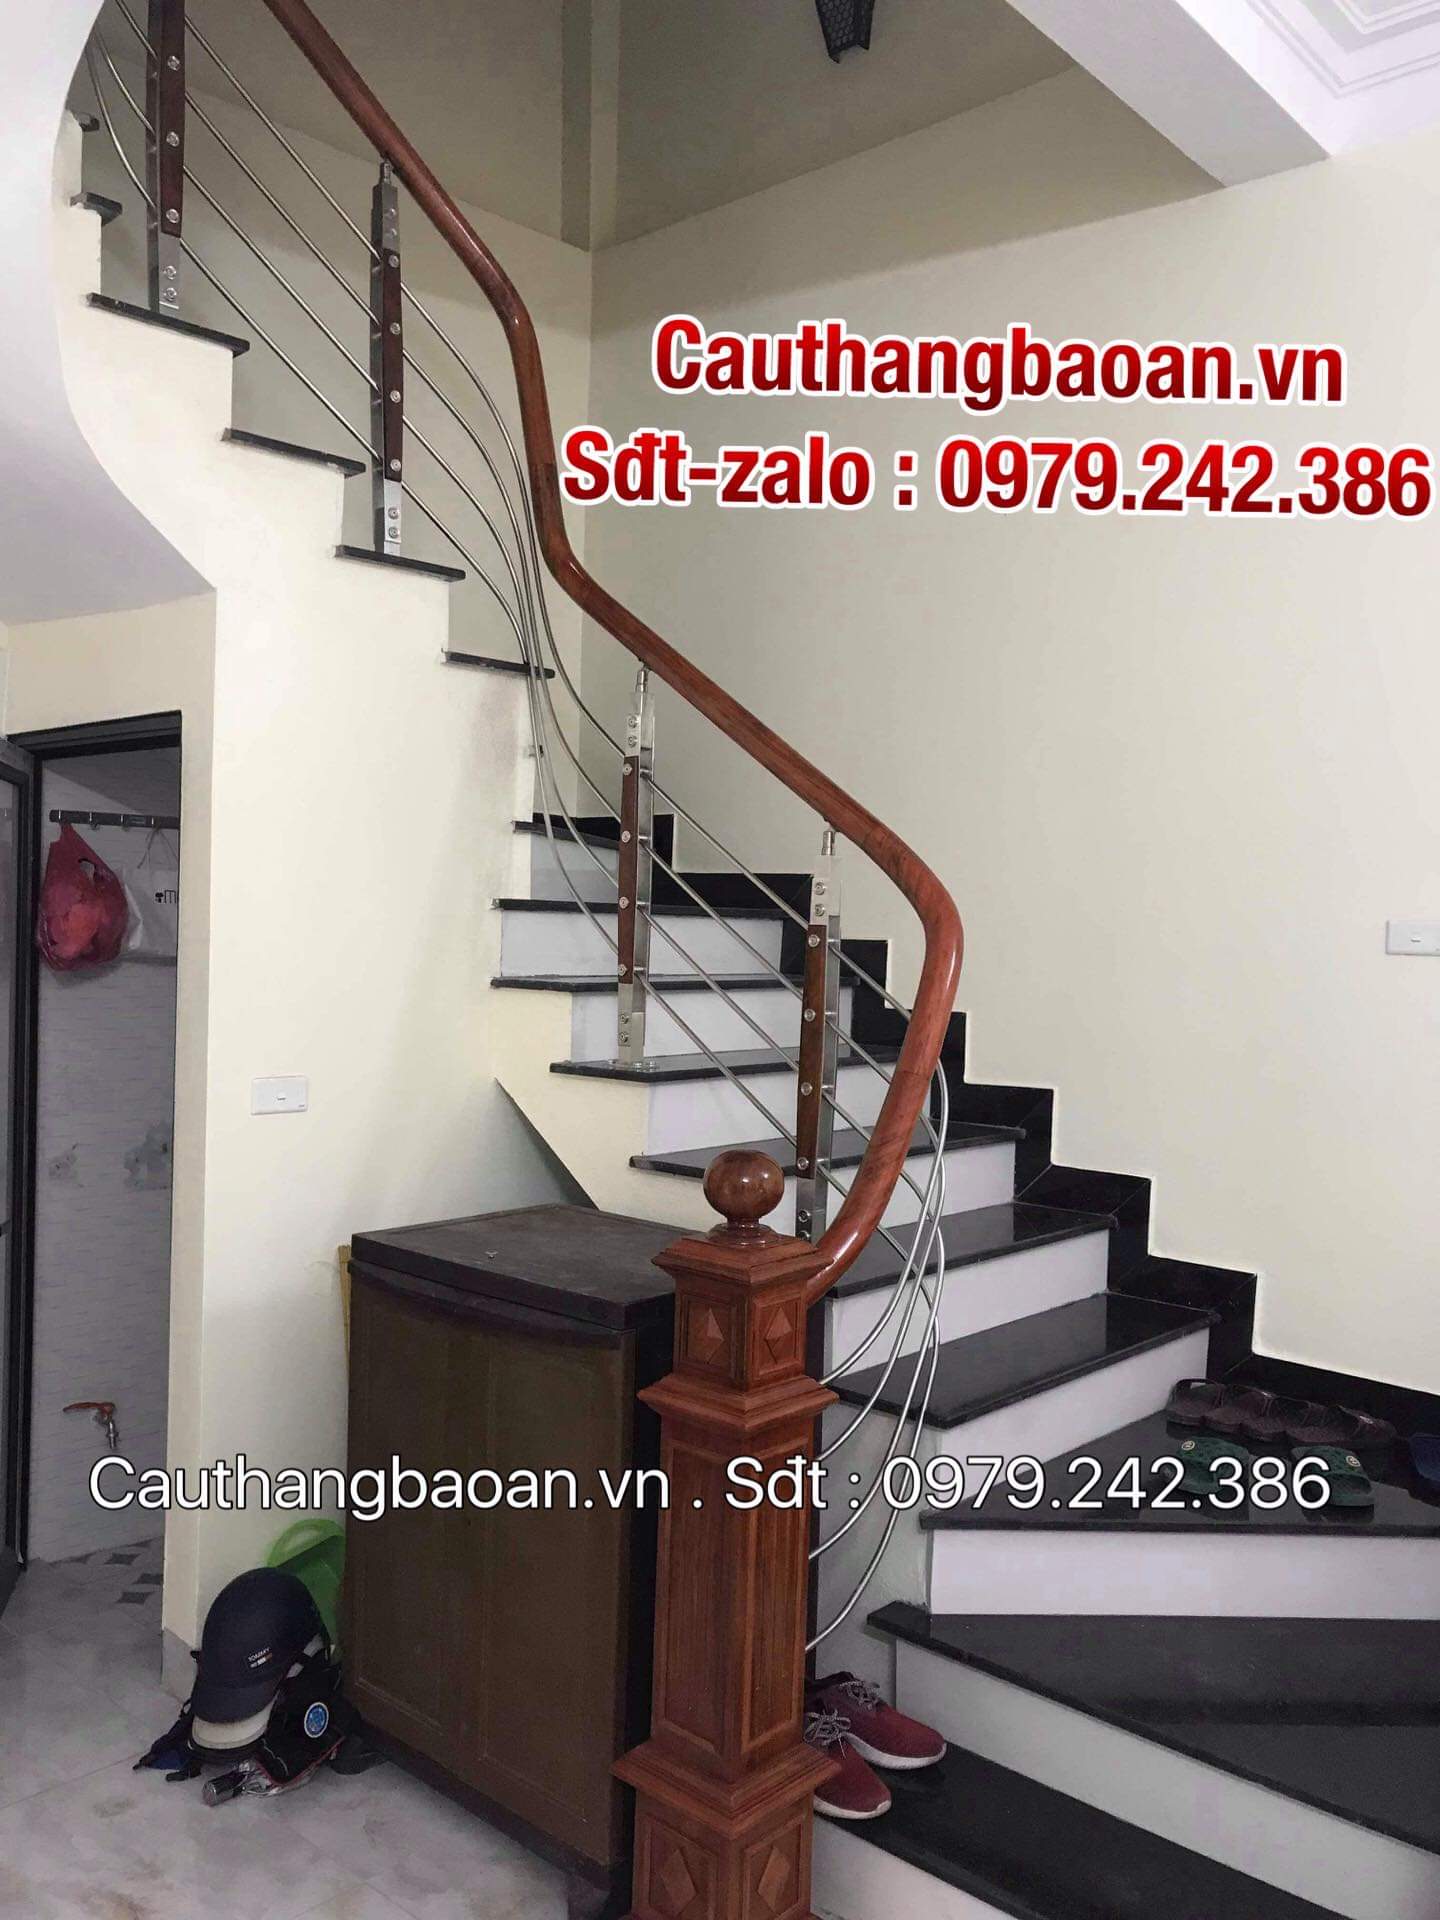 Top 100 mẫu cầu thang inox tay vịn gỗ, Cầu thang inox tay vịn nhựa , Cầu  thang inox tay vịn inox hiện đại tại Hà Nội - Cầu Thang Bảo An -